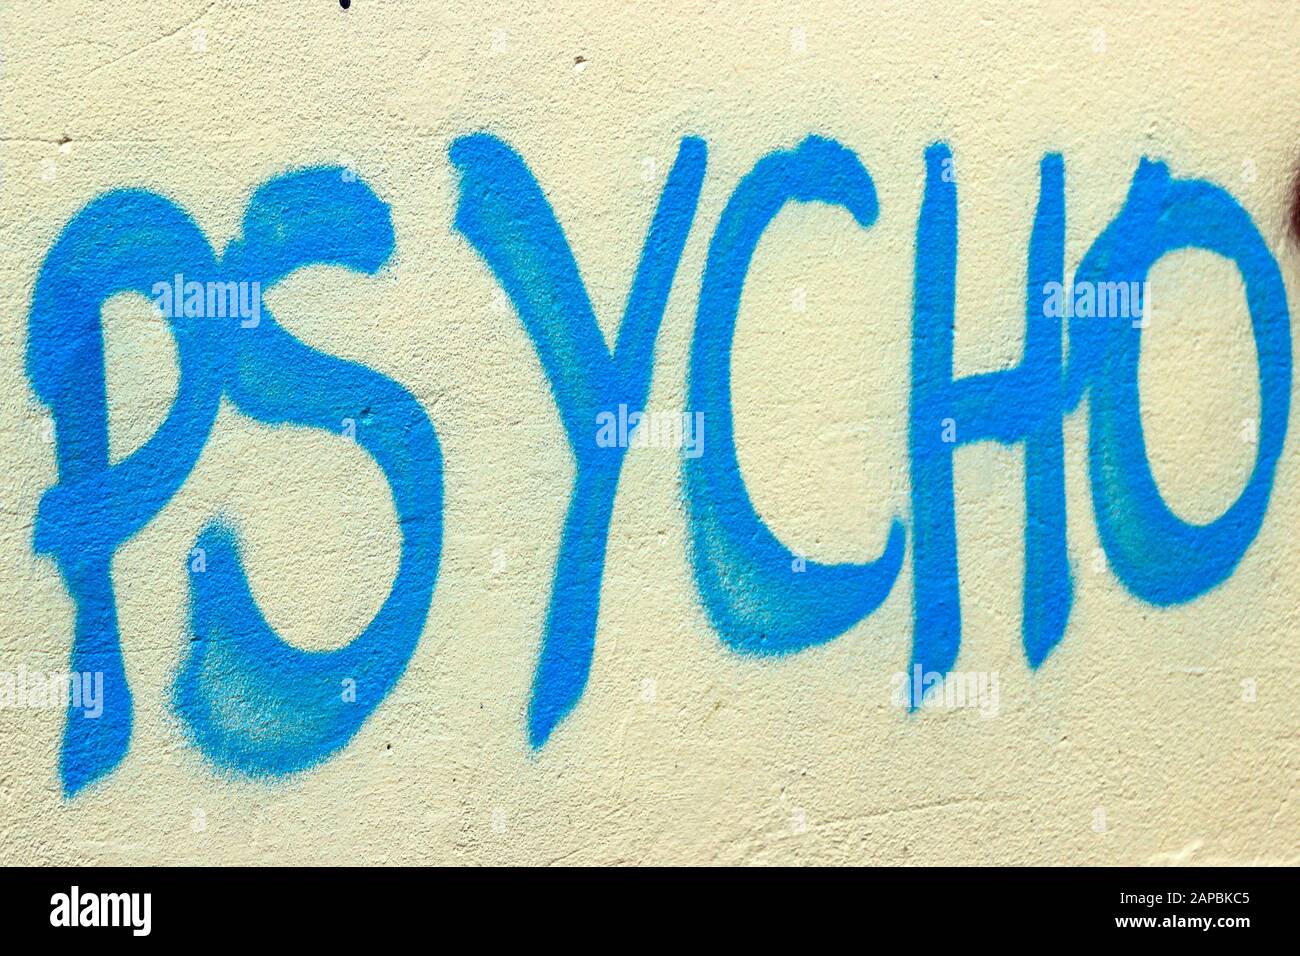 Psycho - blue graffiti text on yellow wall Stock Photo